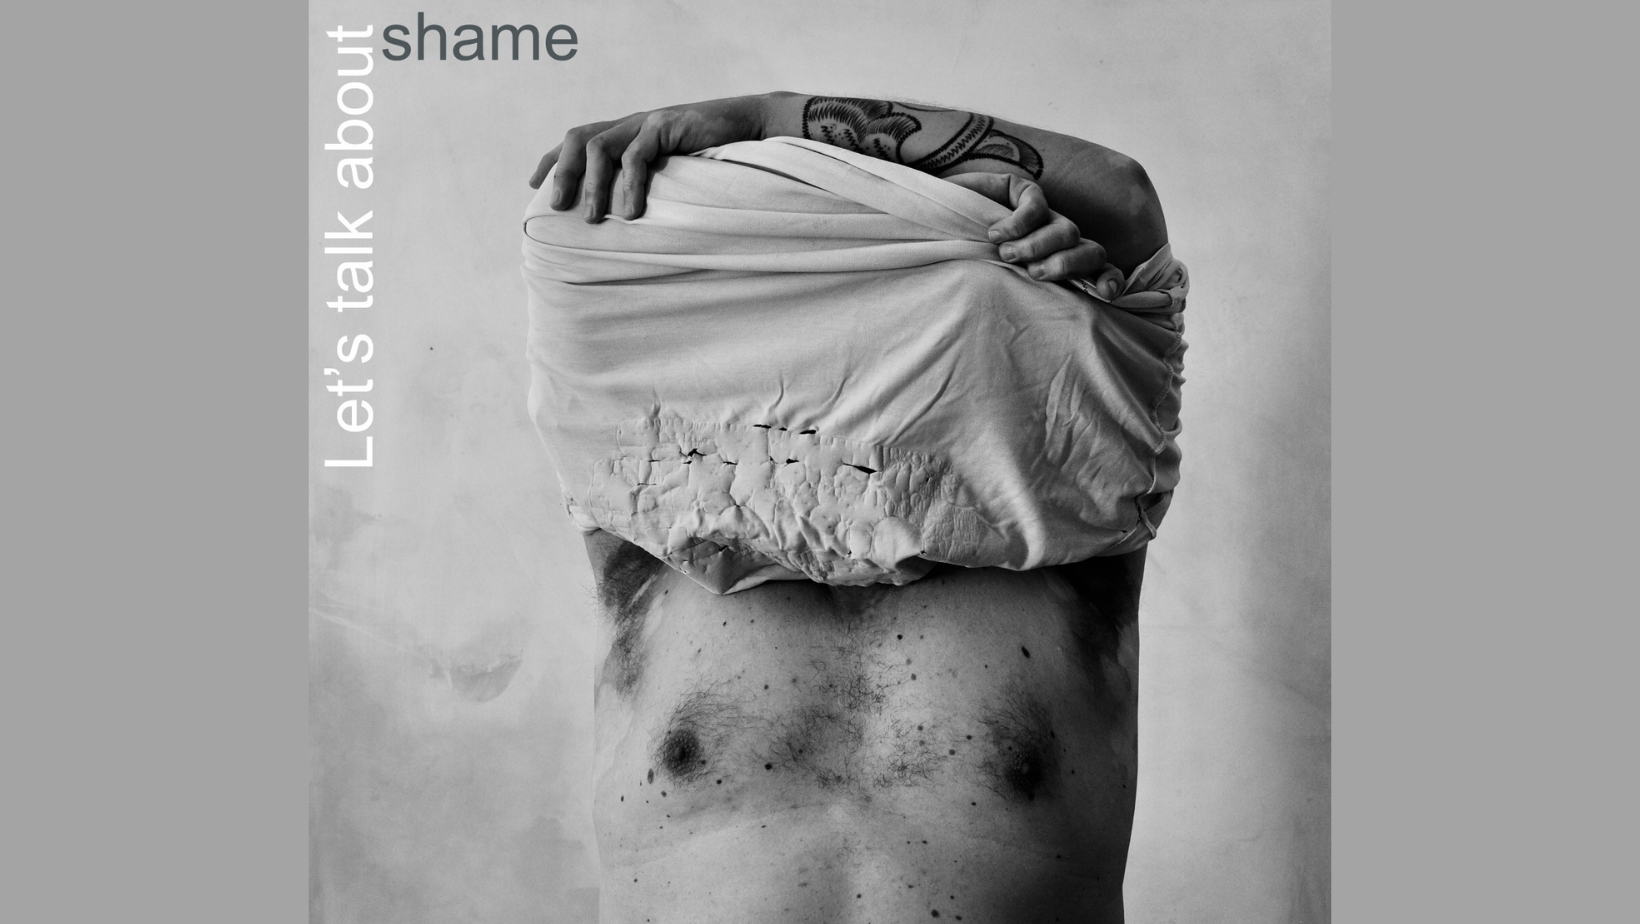 Let’s talk about shame